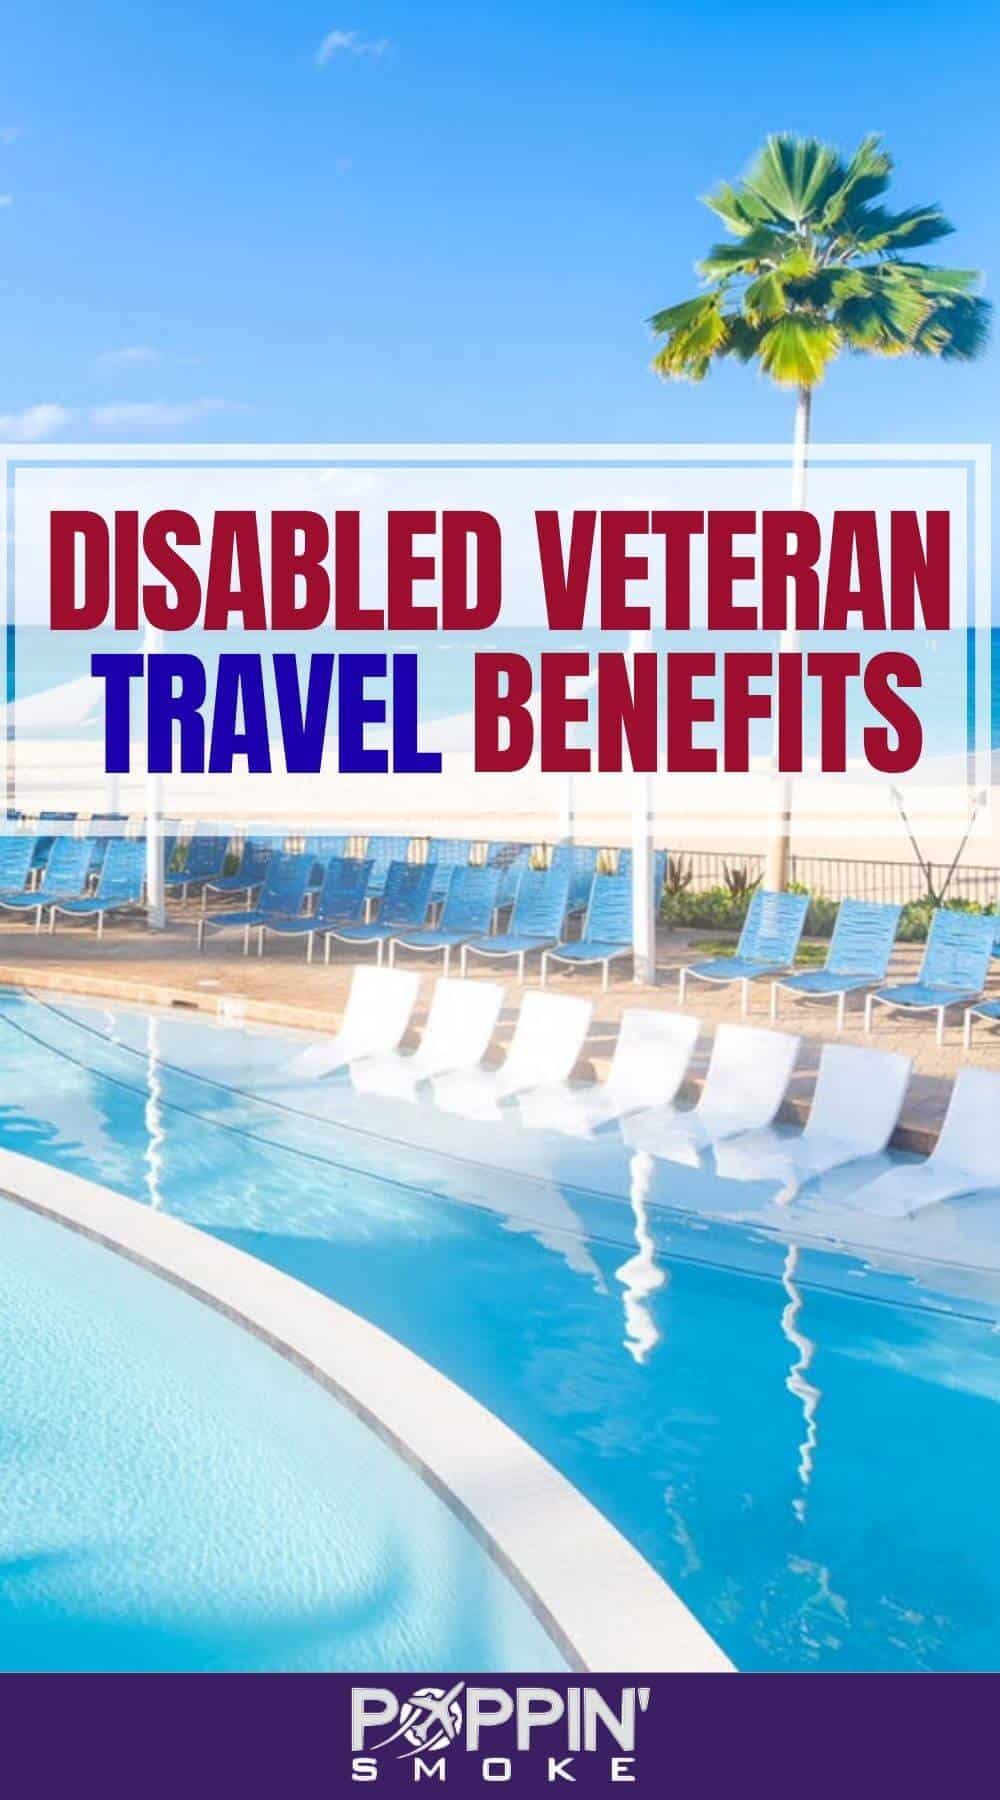 travel benefits for veterans